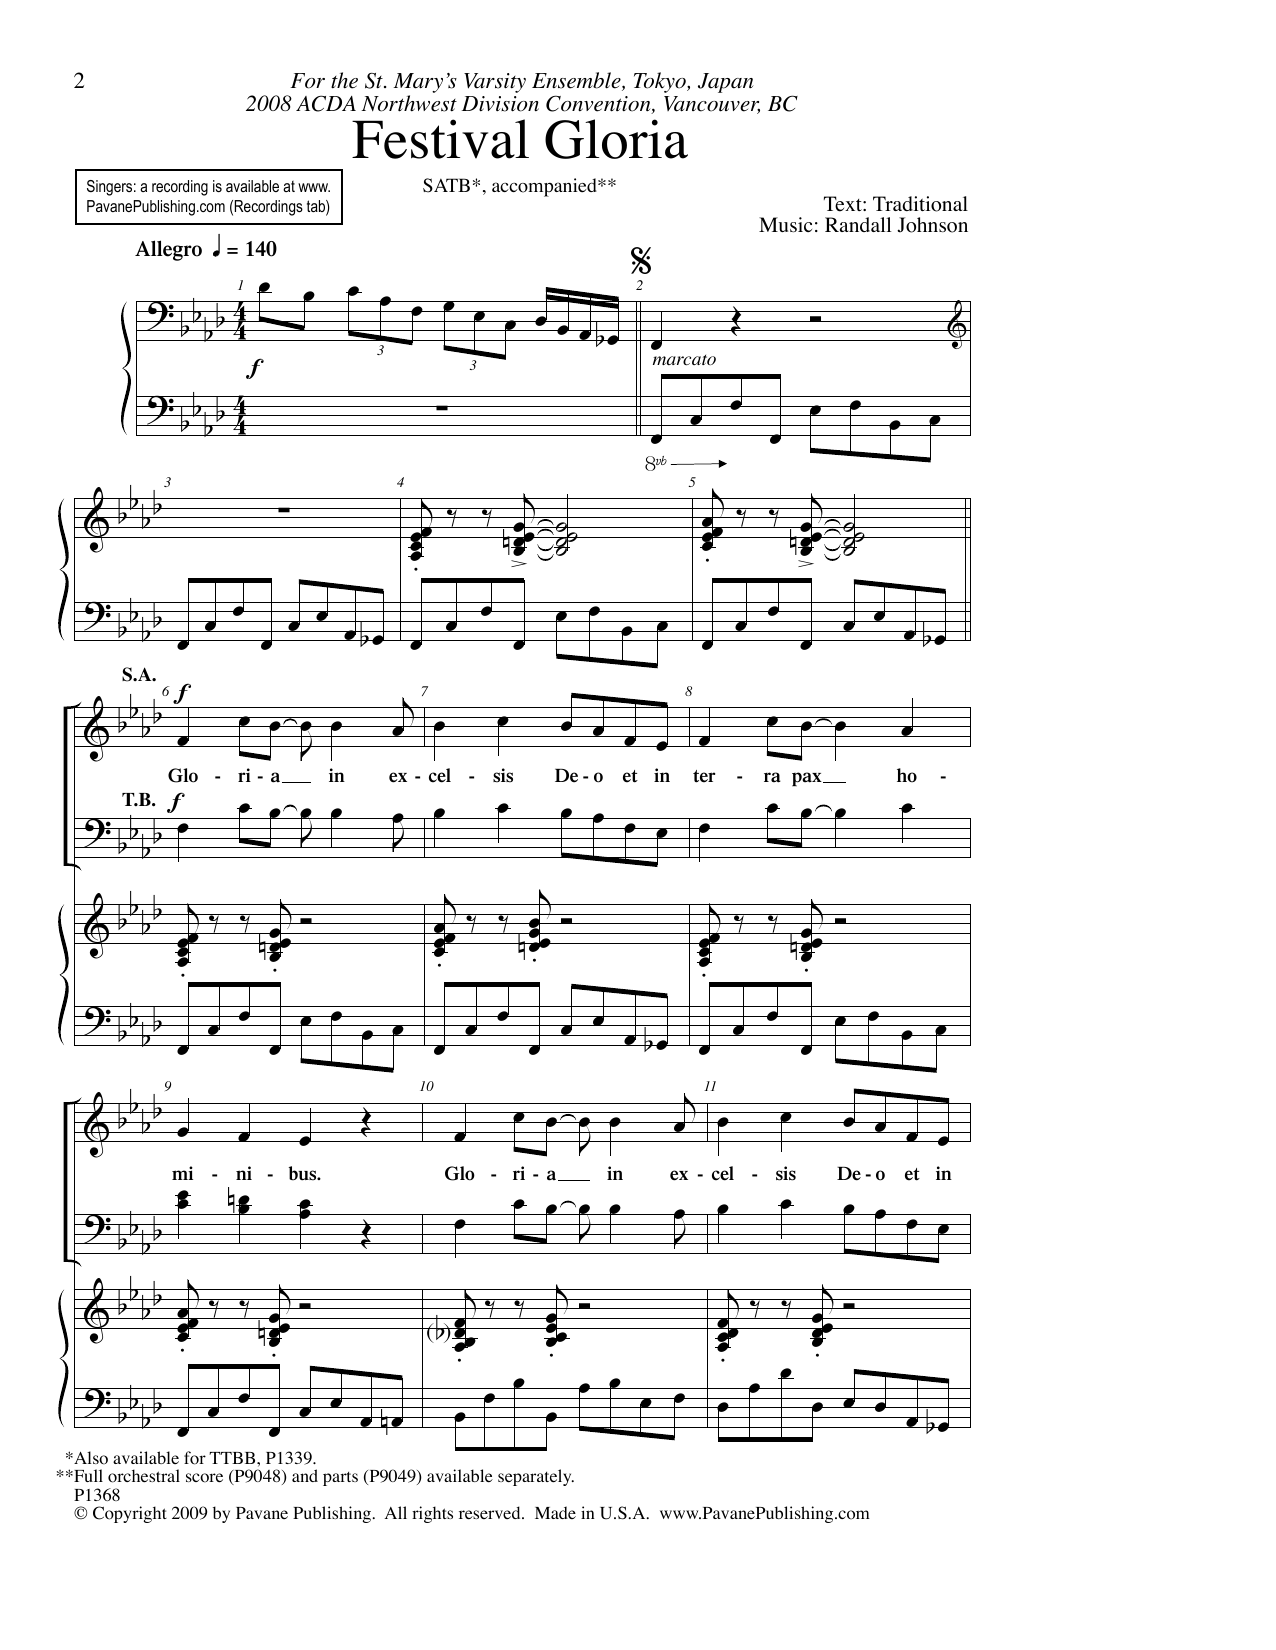 Randall Johnson Festival Gloria Sheet Music Notes & Chords for TTBB Choir - Download or Print PDF